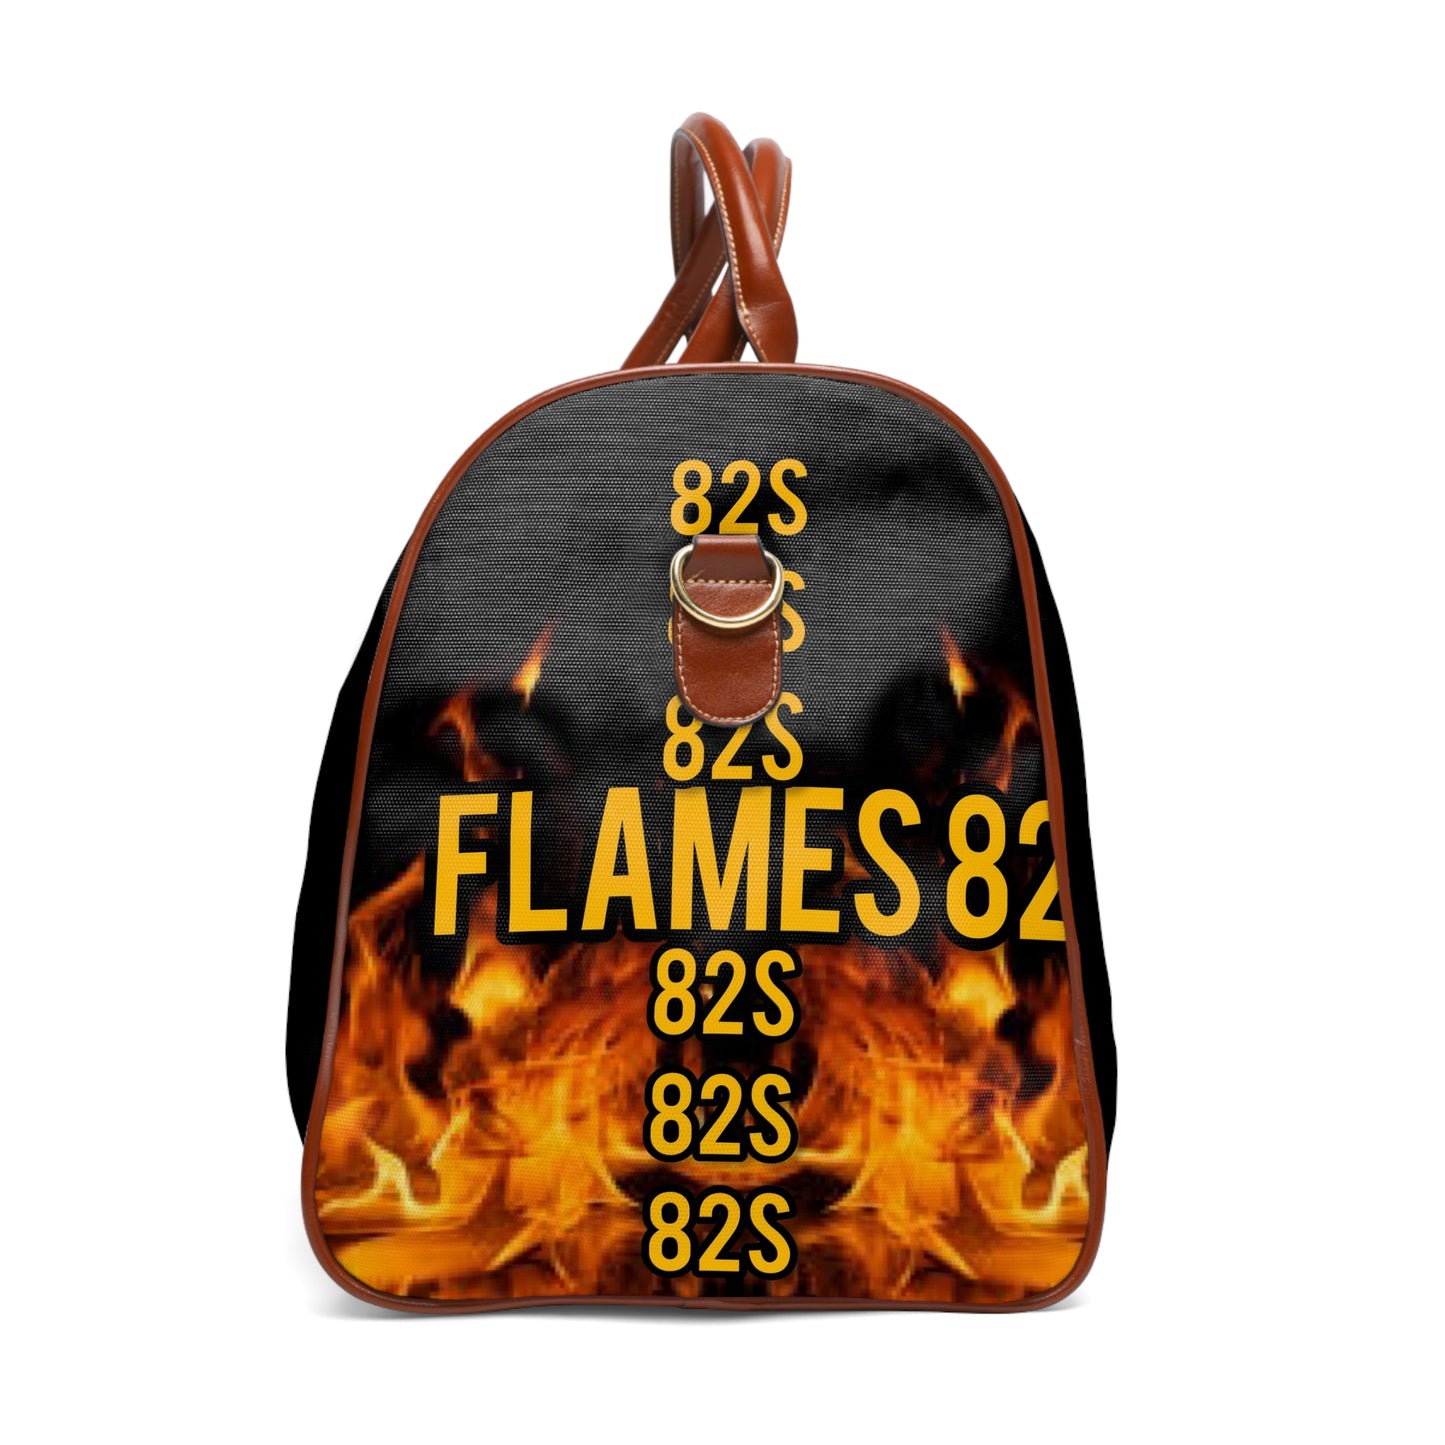 Flames 82 Waterproof Travel Bag